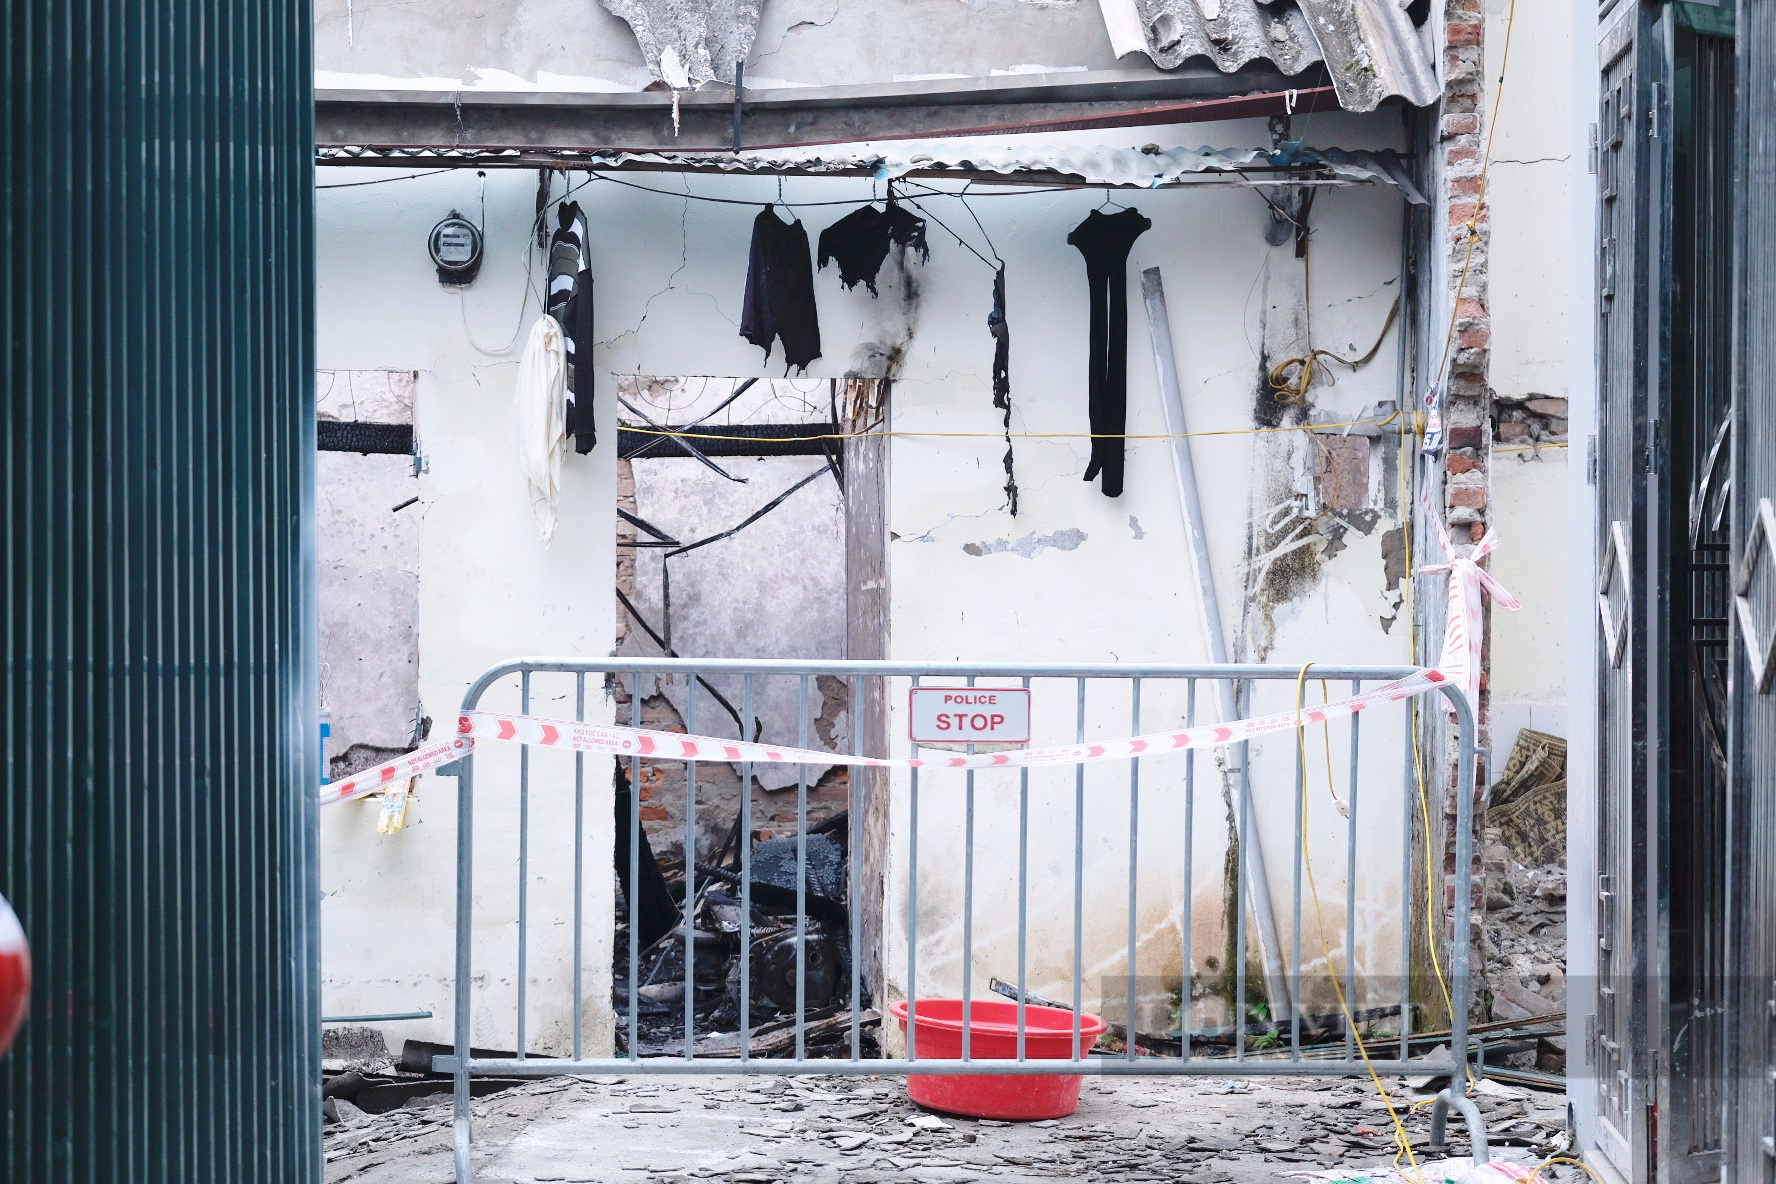 Hiện trường tan hoang, đổ nát sau nổ lớn ở Hà Nội, 3 người cùng gia đình tử vong thương tâm - Ảnh 3.